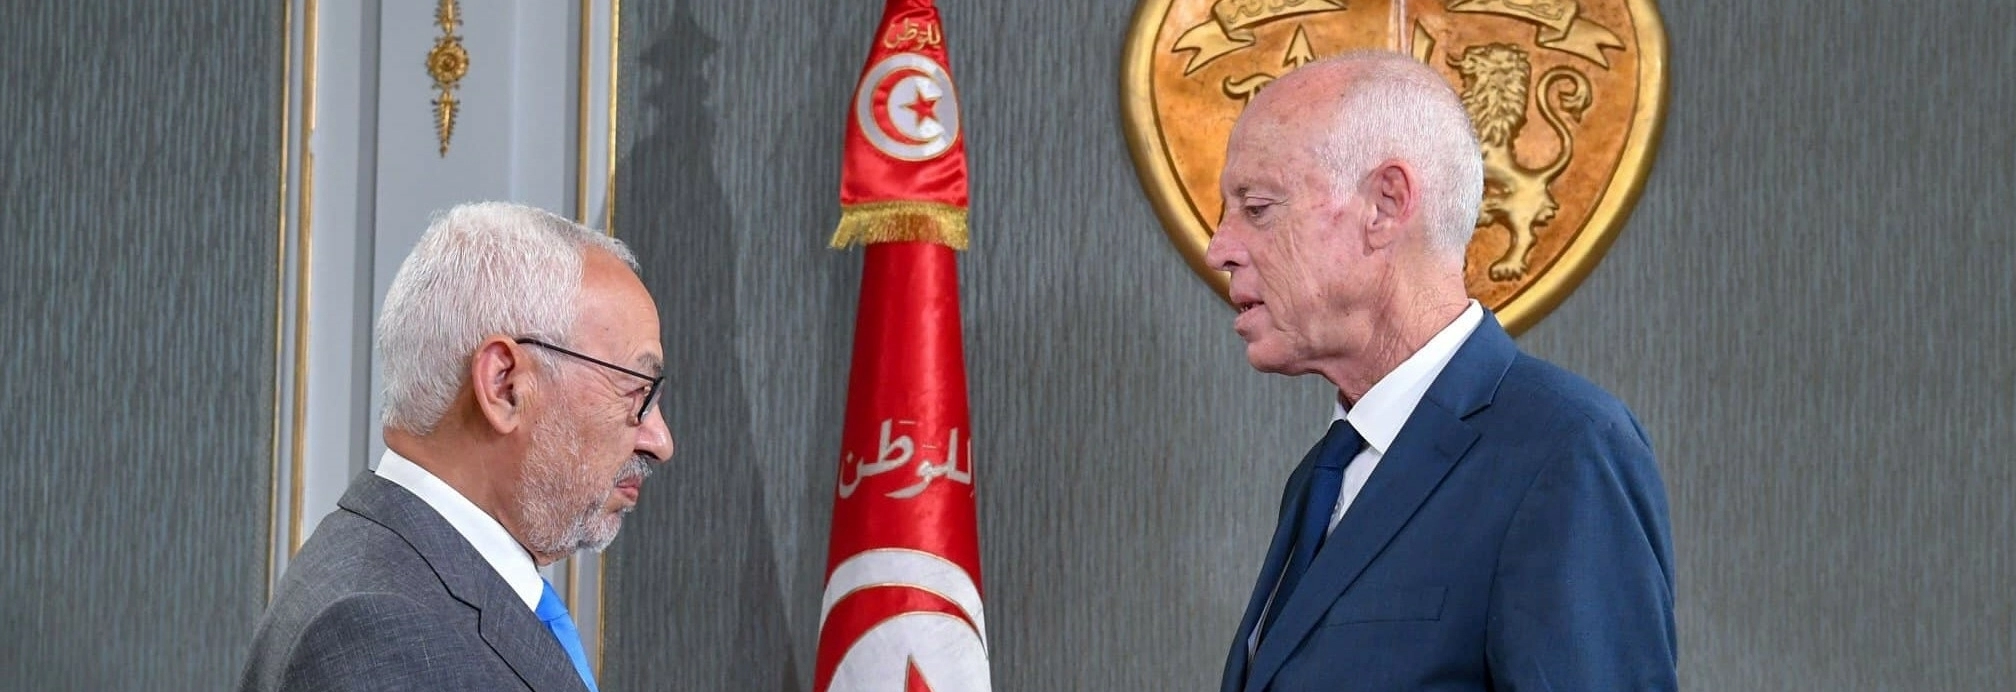 الغنوشي: سعيّد سيُعيد تونس 62 سنة للوراء ولا مناص من “النضال السلمي”